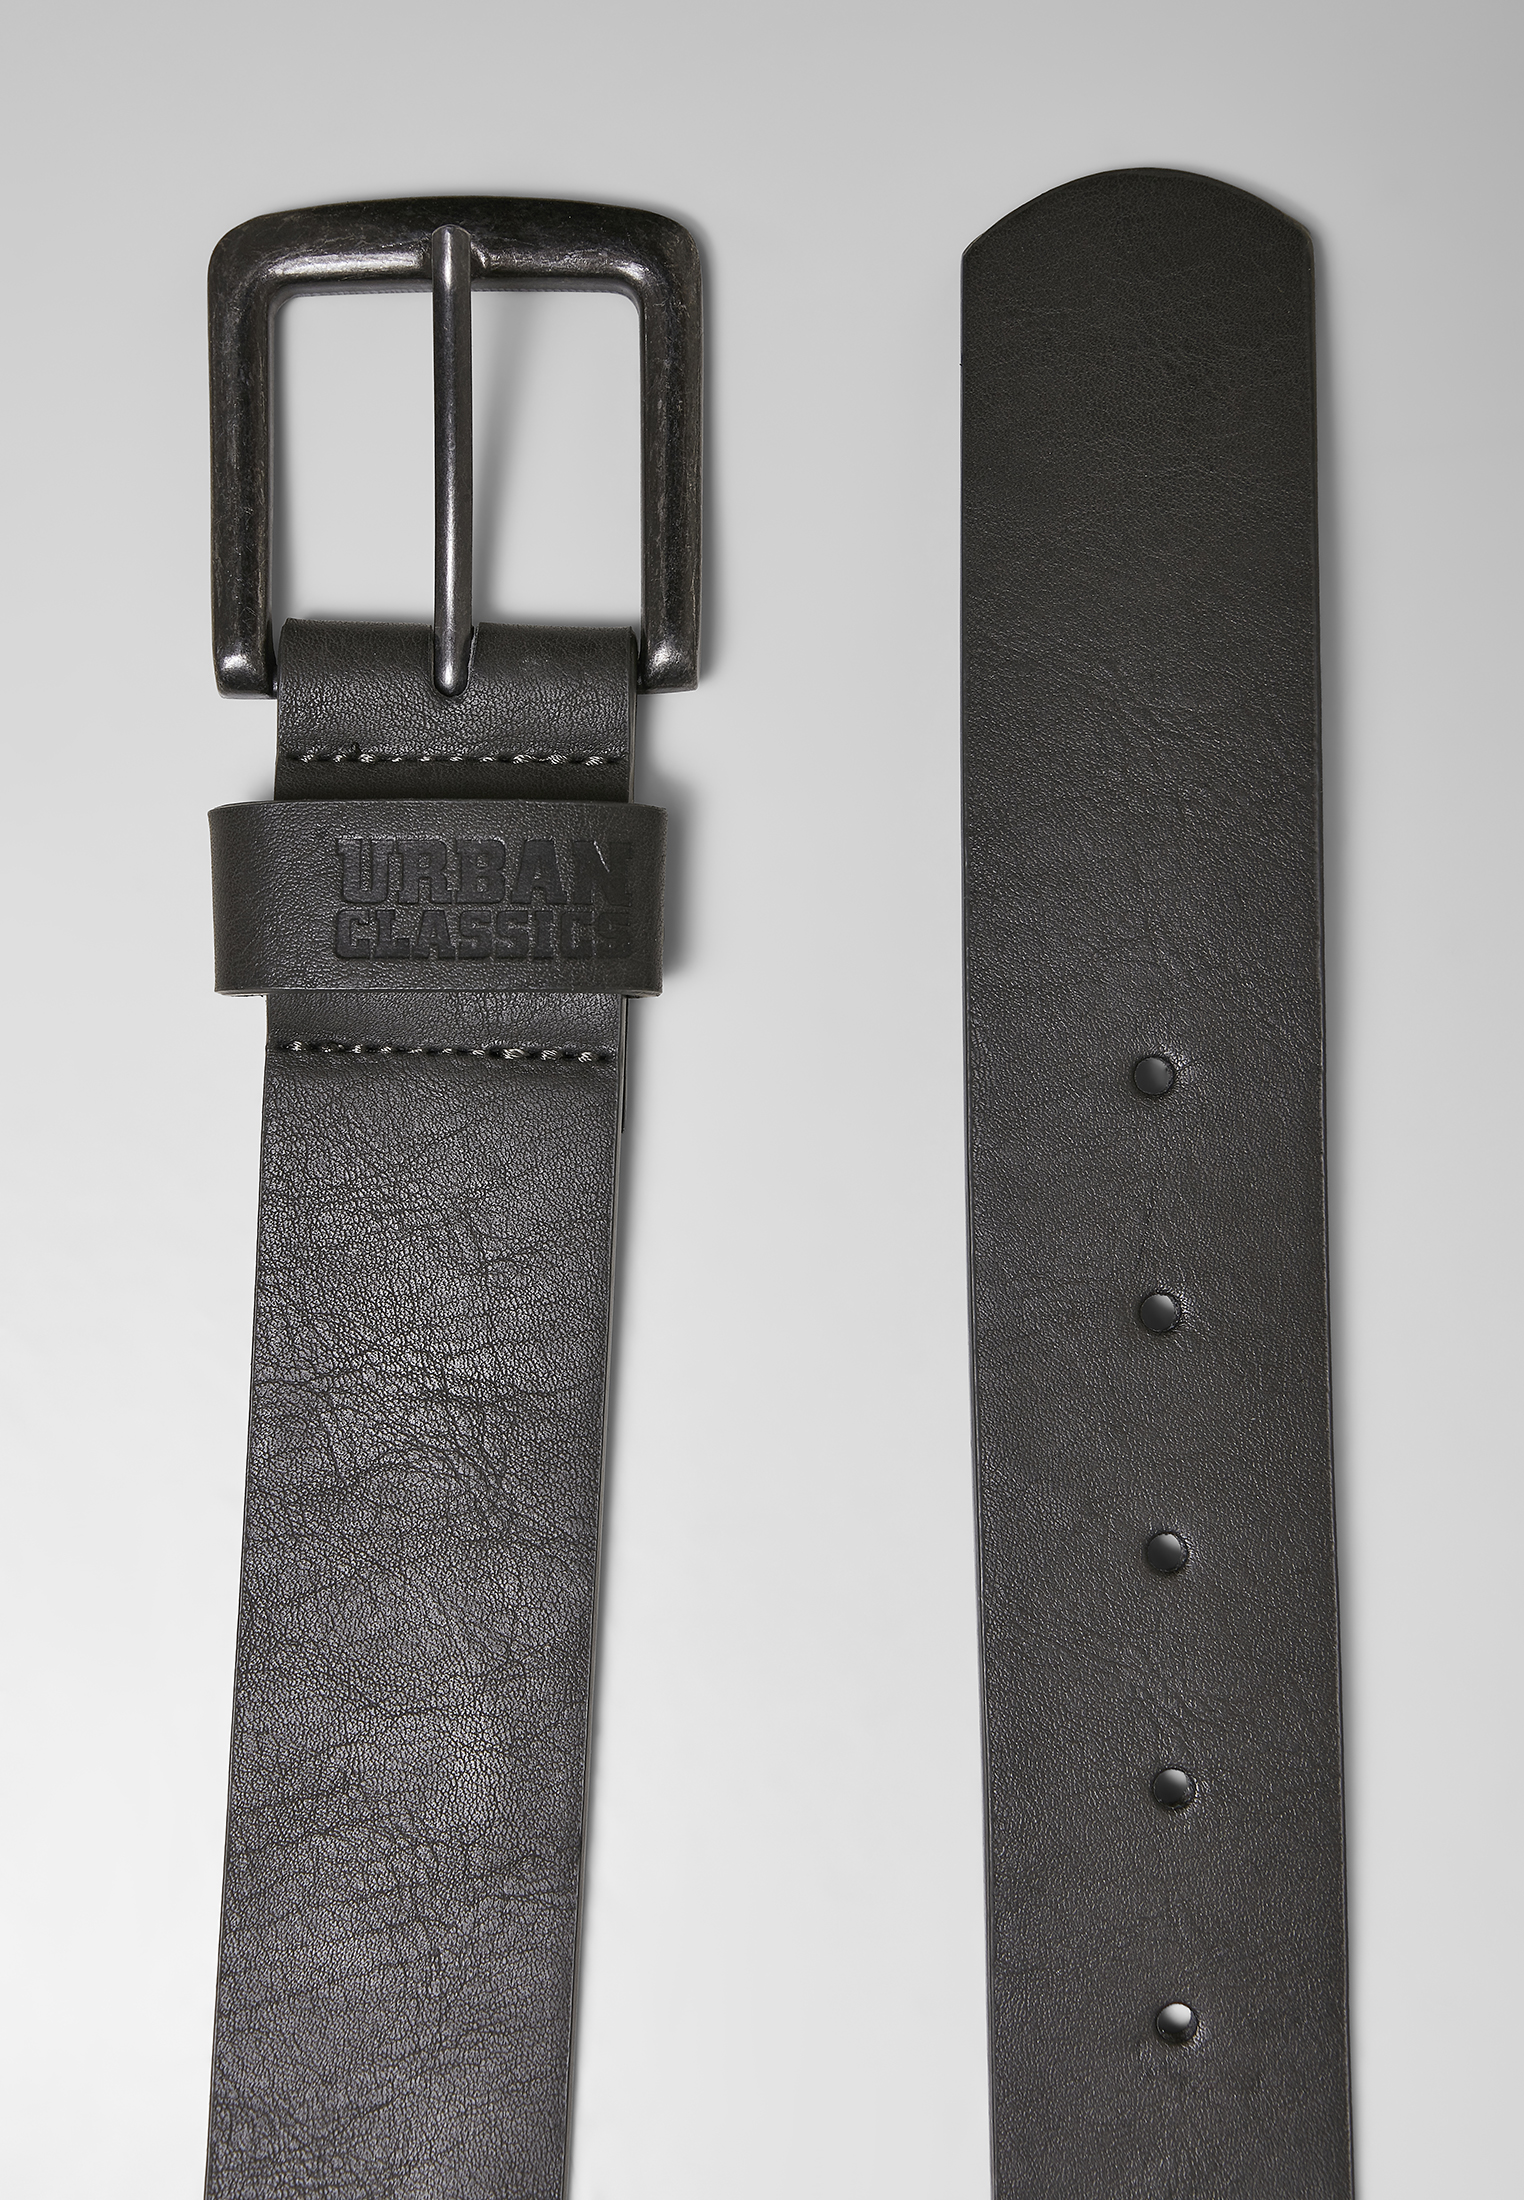 G?rtel Leather Imitation Belt in Farbe darkgrey